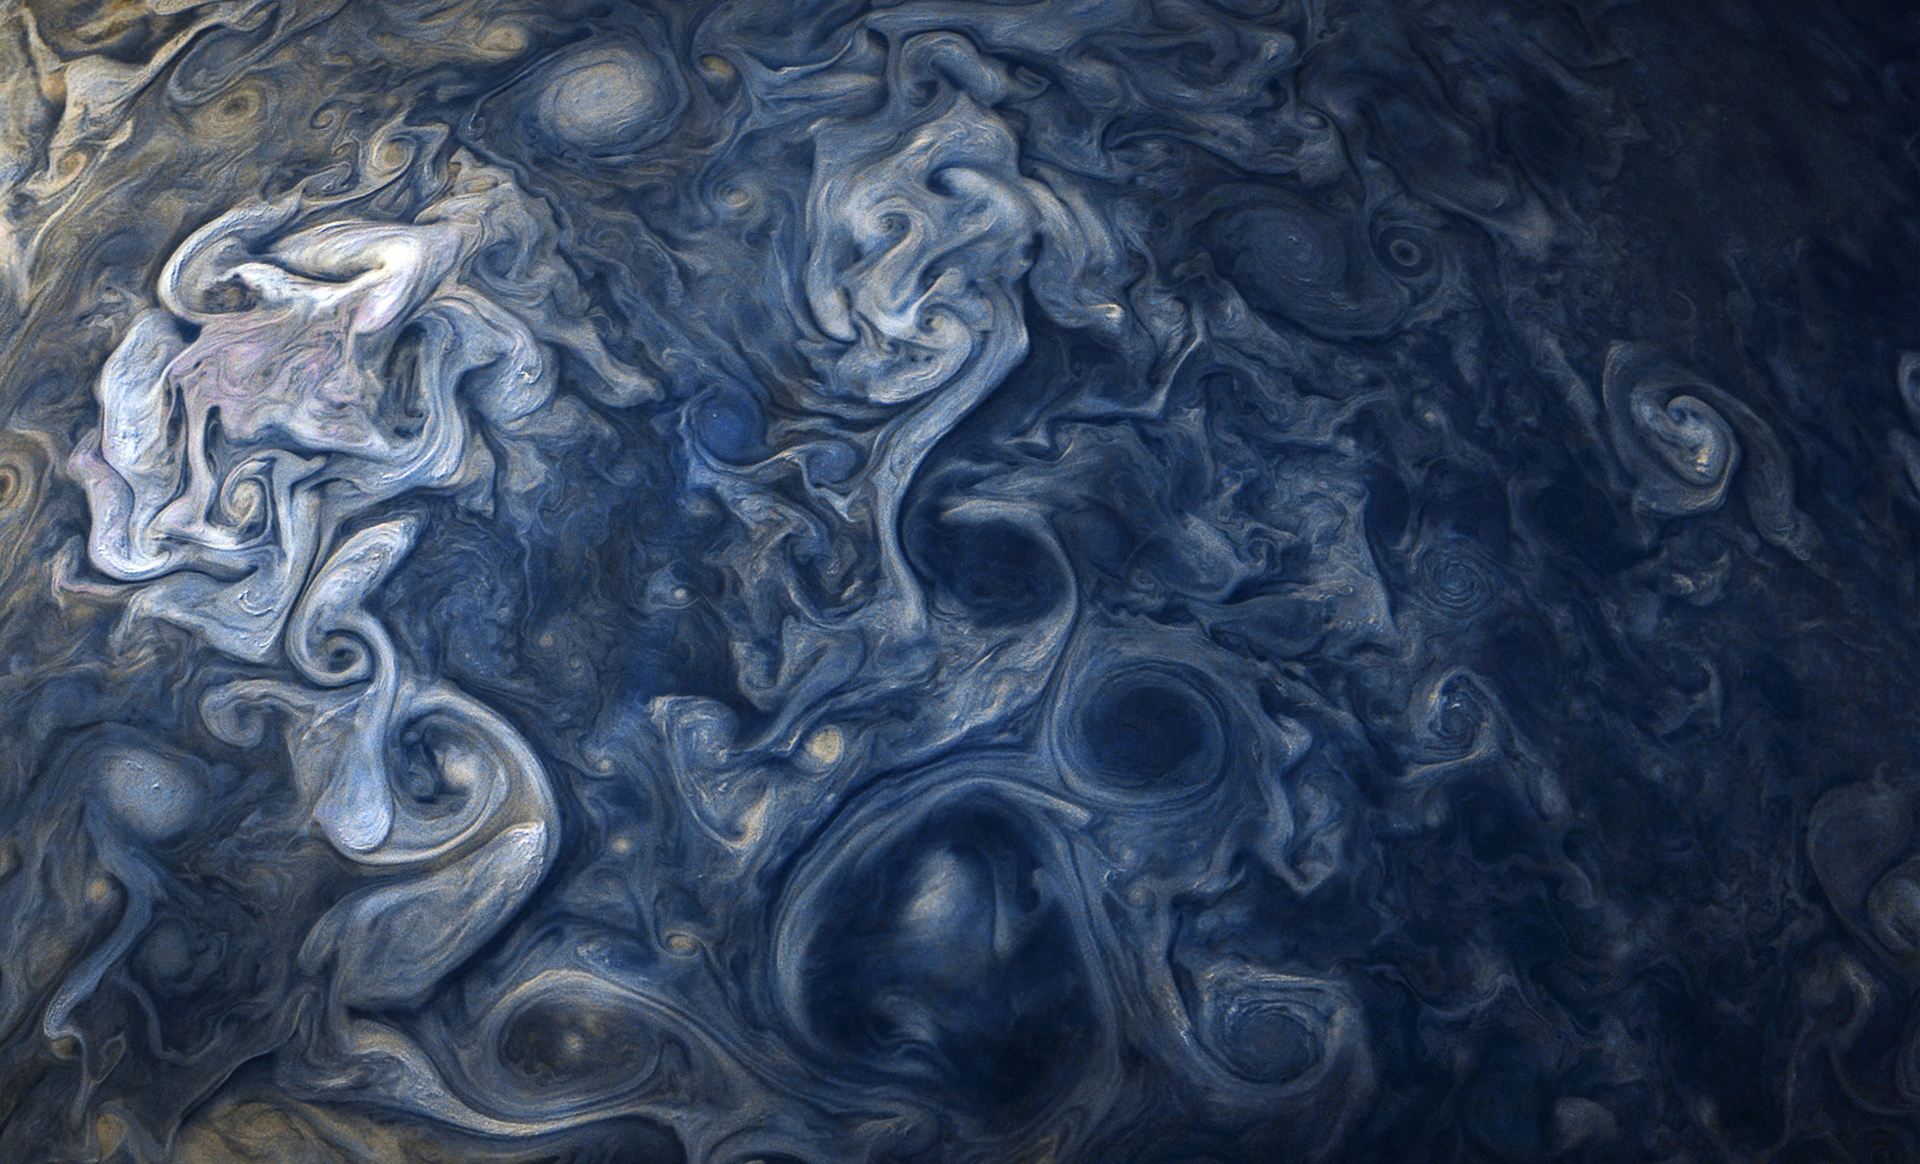 A detailed photo of Jupiter's clouds as captured by NASA's Juno spacecraft in 2017. (Image: NASA/JPL-Caltech/SwRI/MSSS/Gerald Eichstädt/ Seán Doran)